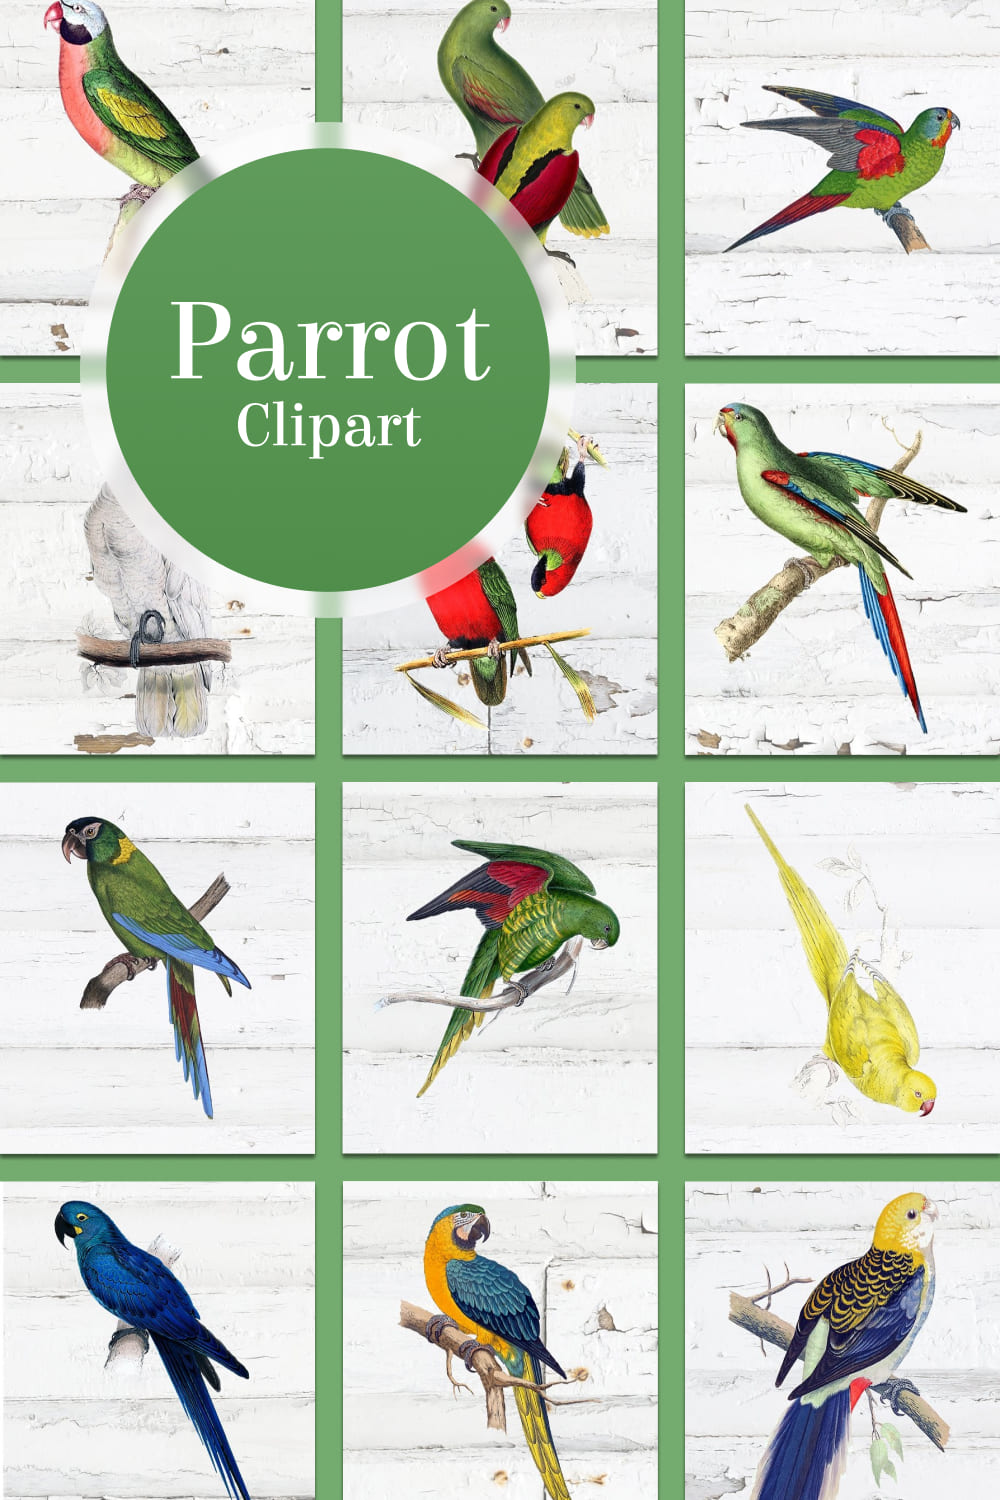 Parrot clipart - pinterest image preview.